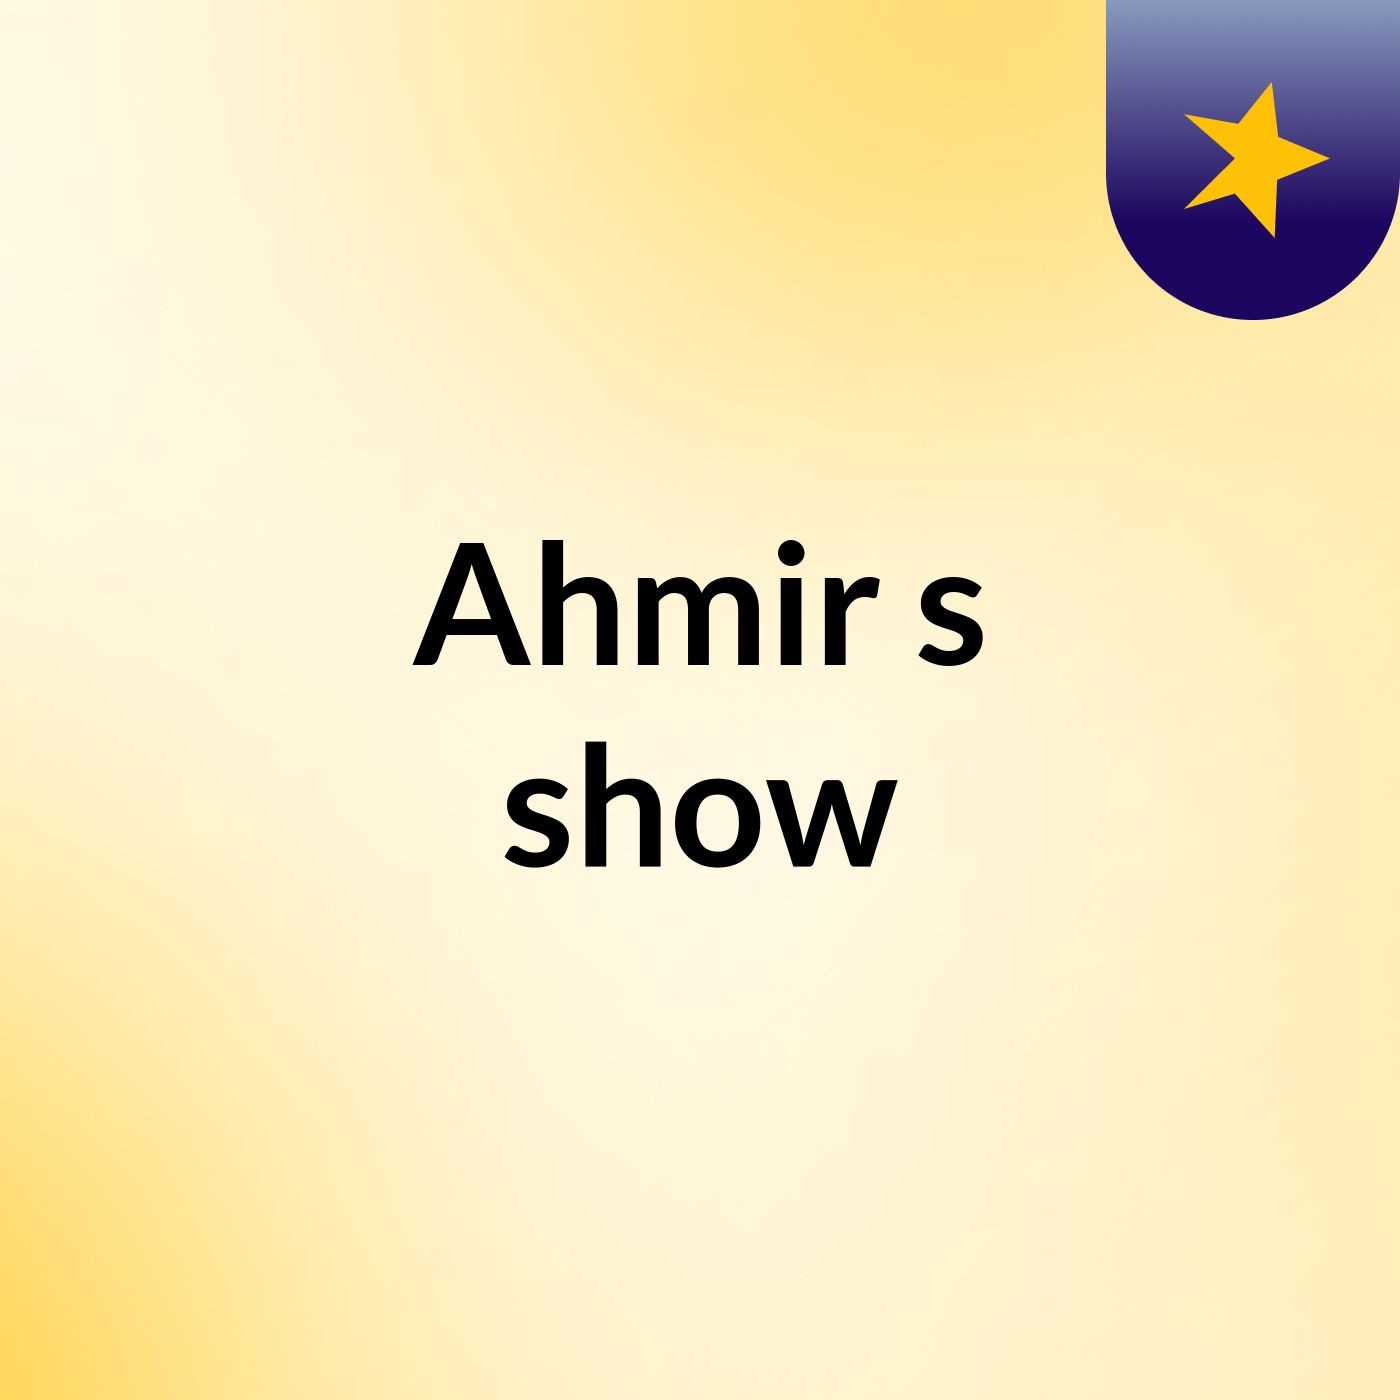 Ahmir's show